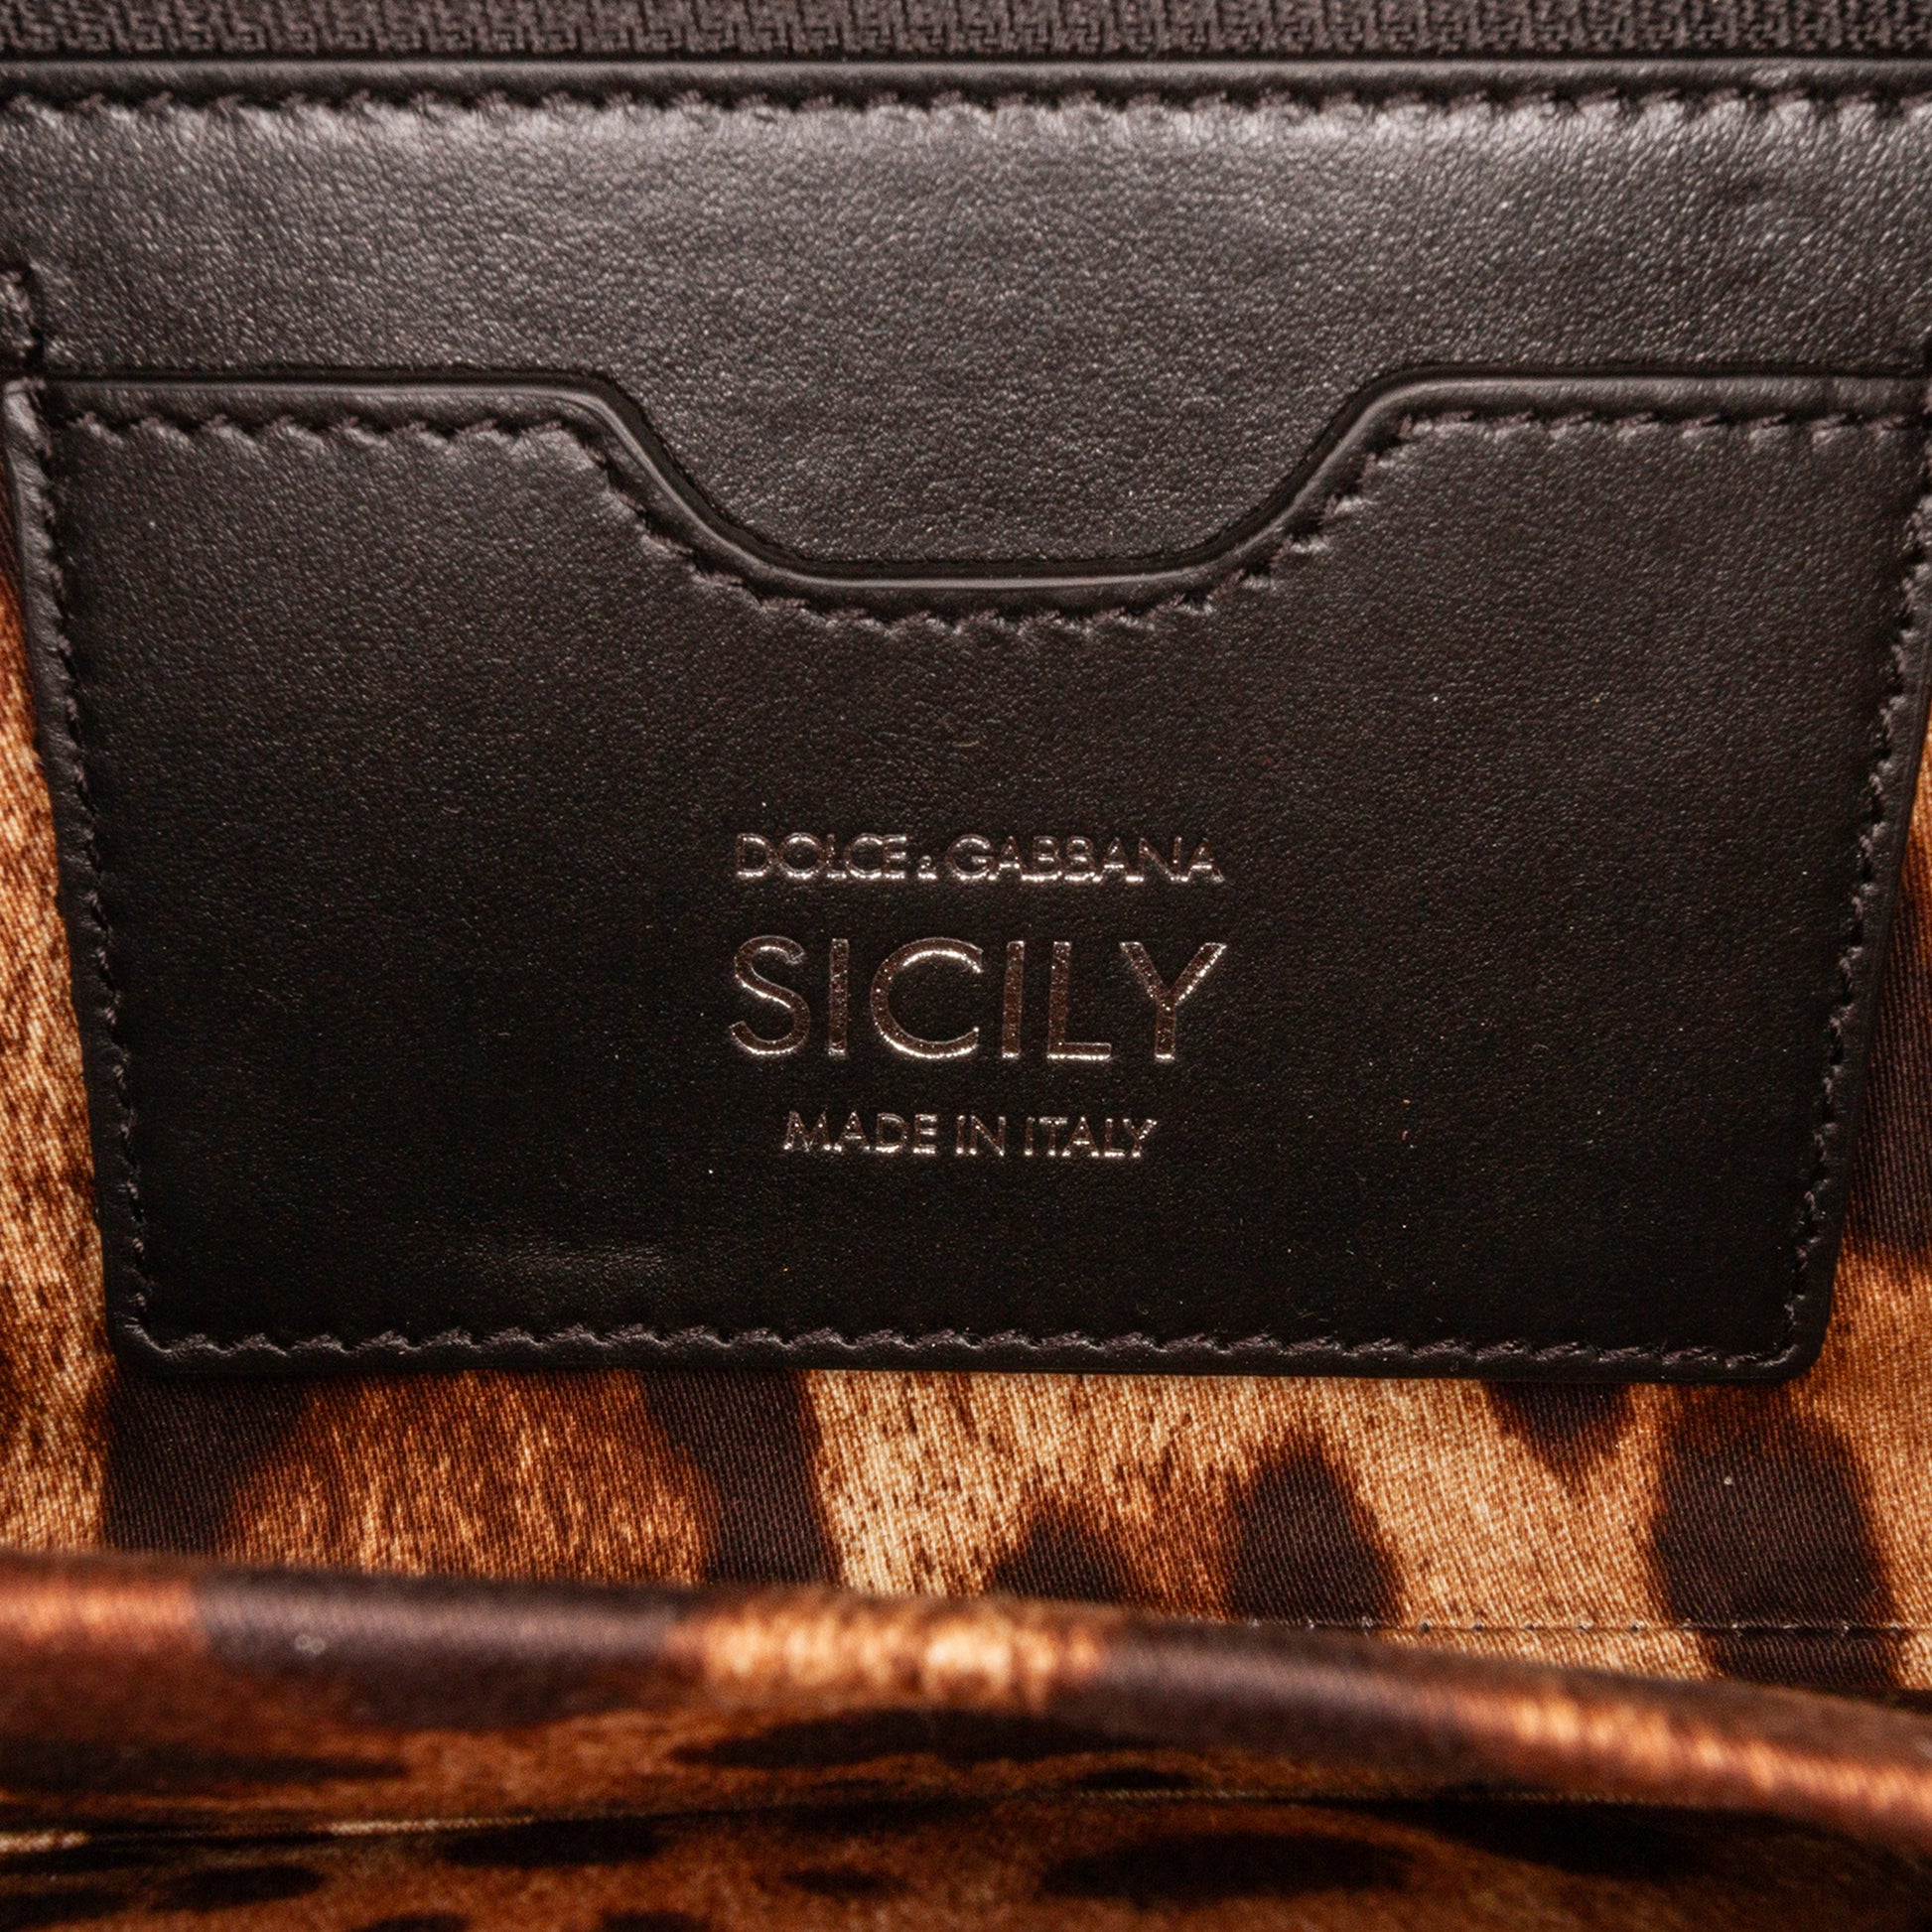 Miss Sicily Patent Leather Satchel Black - Gaby Paris